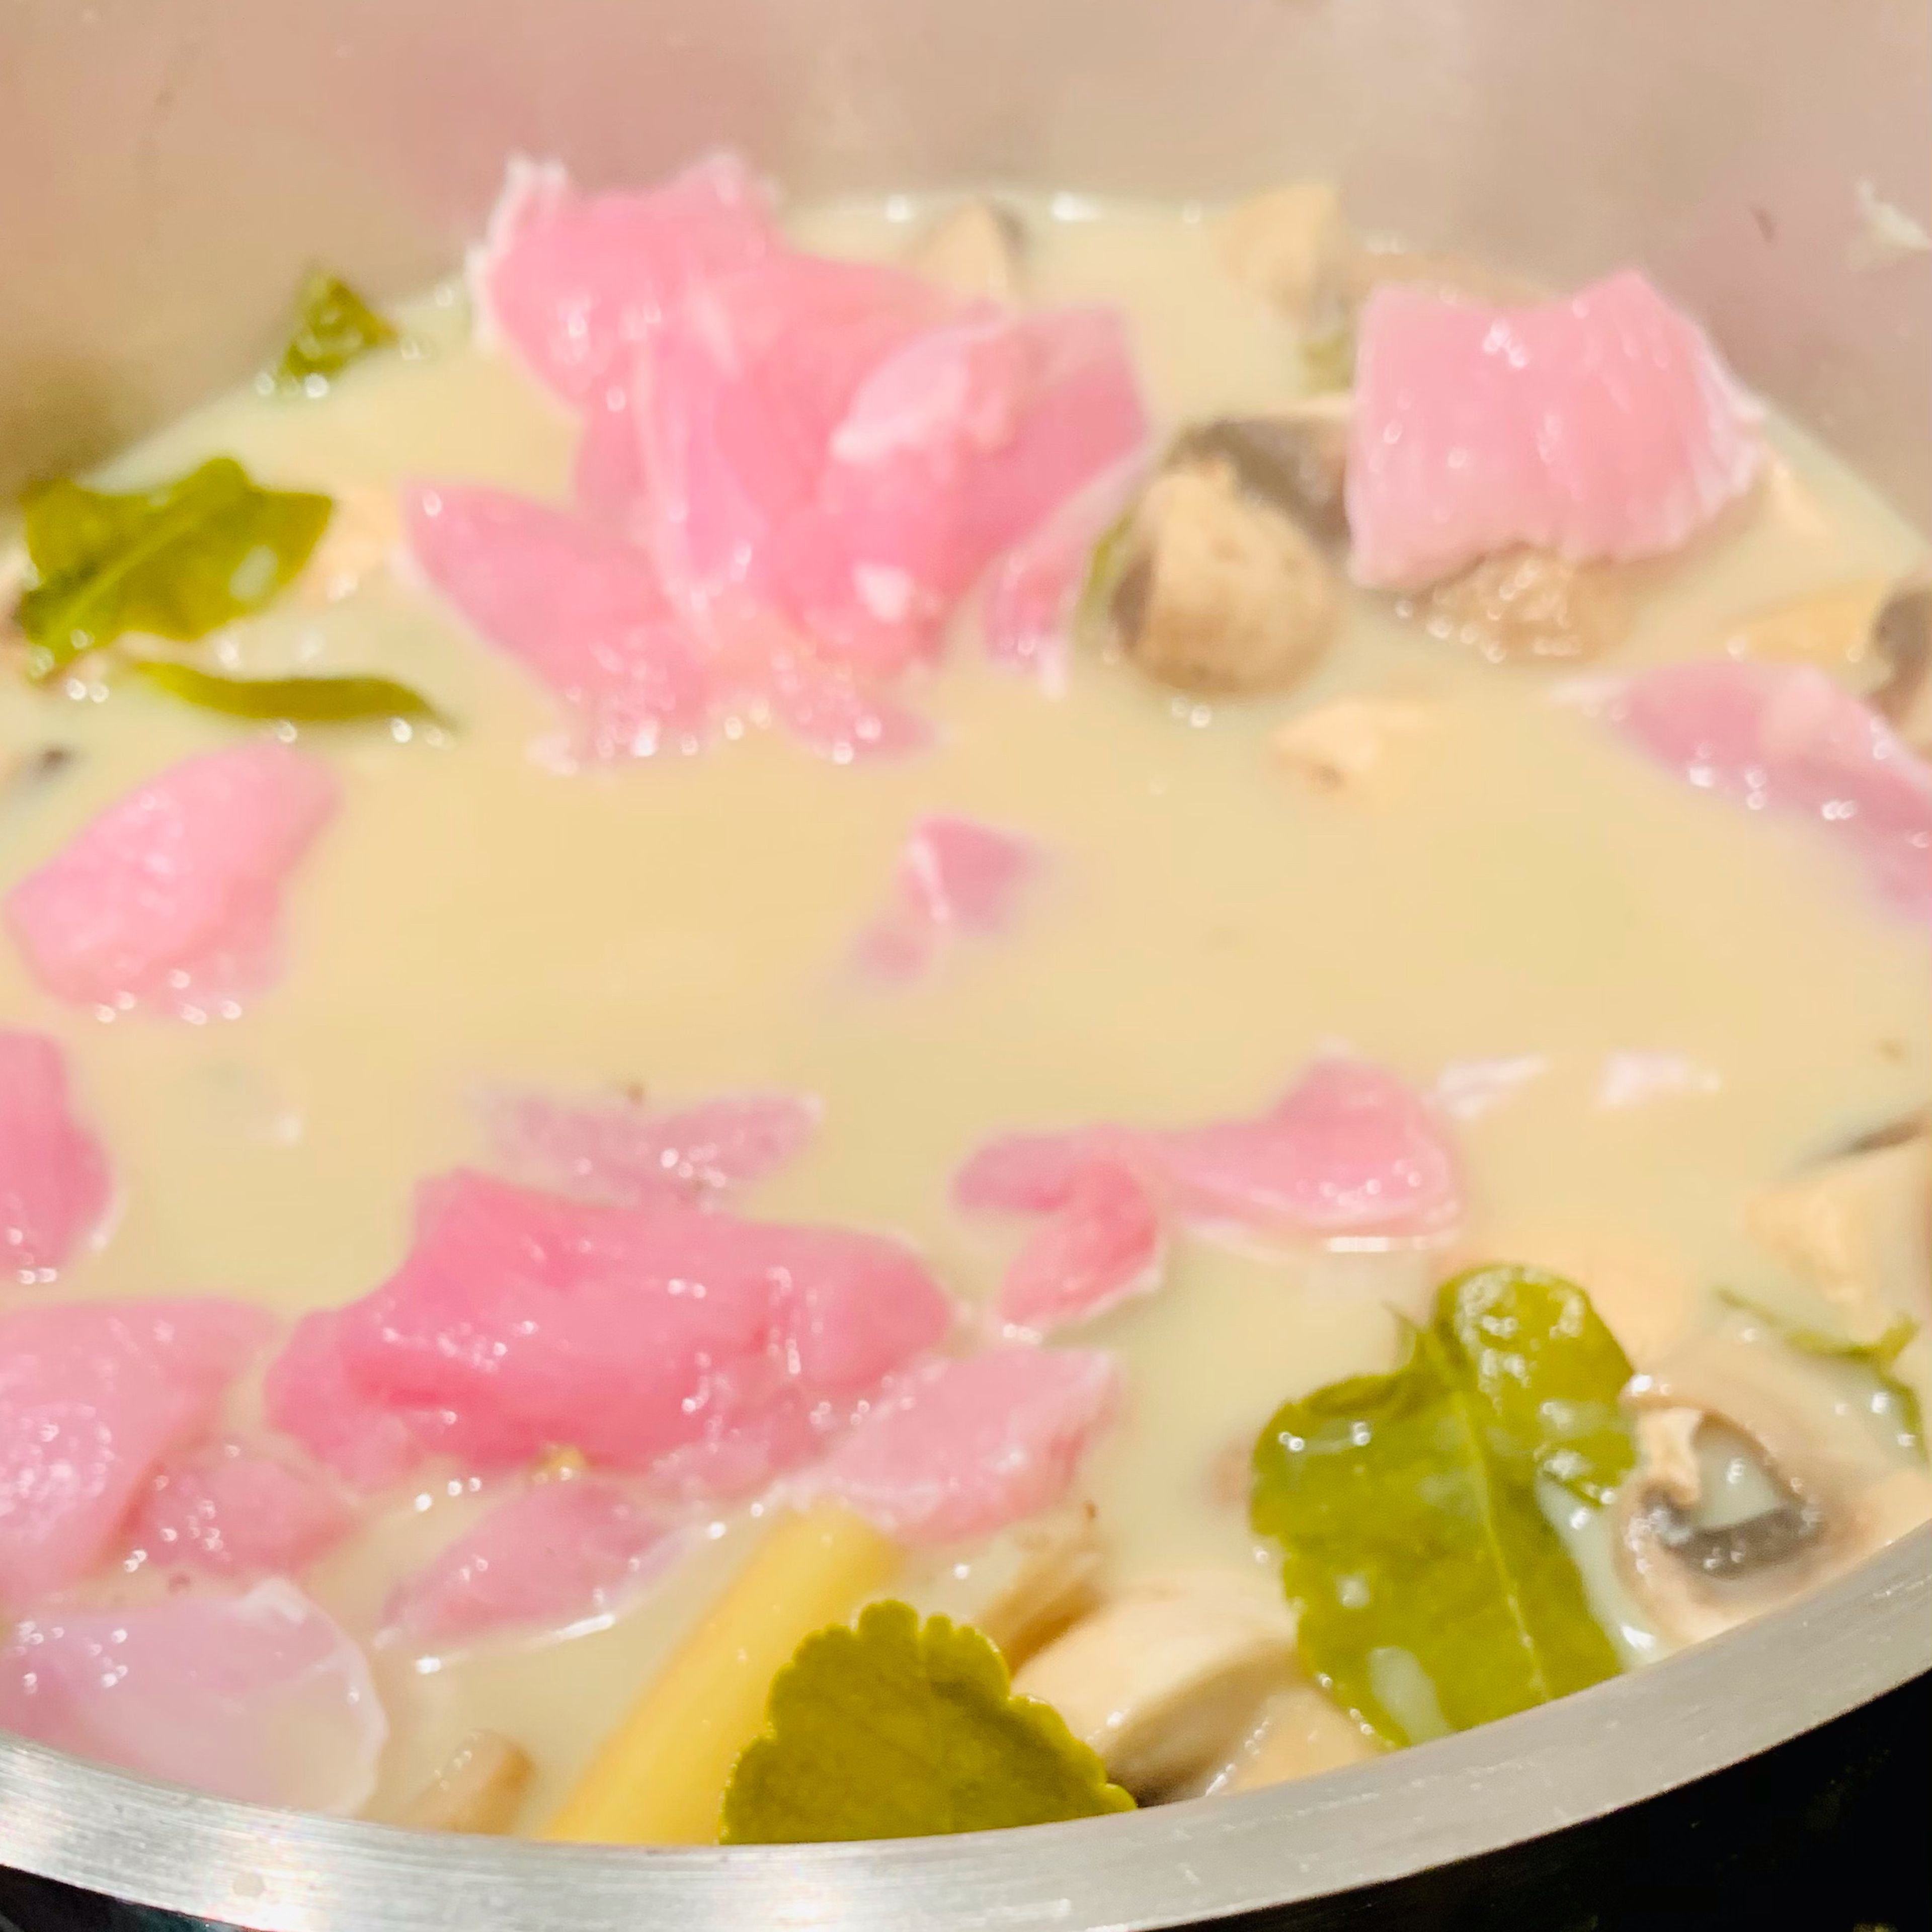 Hitze runtersetzen, klein geschnittenes Hähnchenfleisch und restliche Kokosmilch hinzufügen und einige Minuten ziehen lassen. Mit Fischsauce abschmecken, in Teller umfüllen und mit Koriander dekorieren.